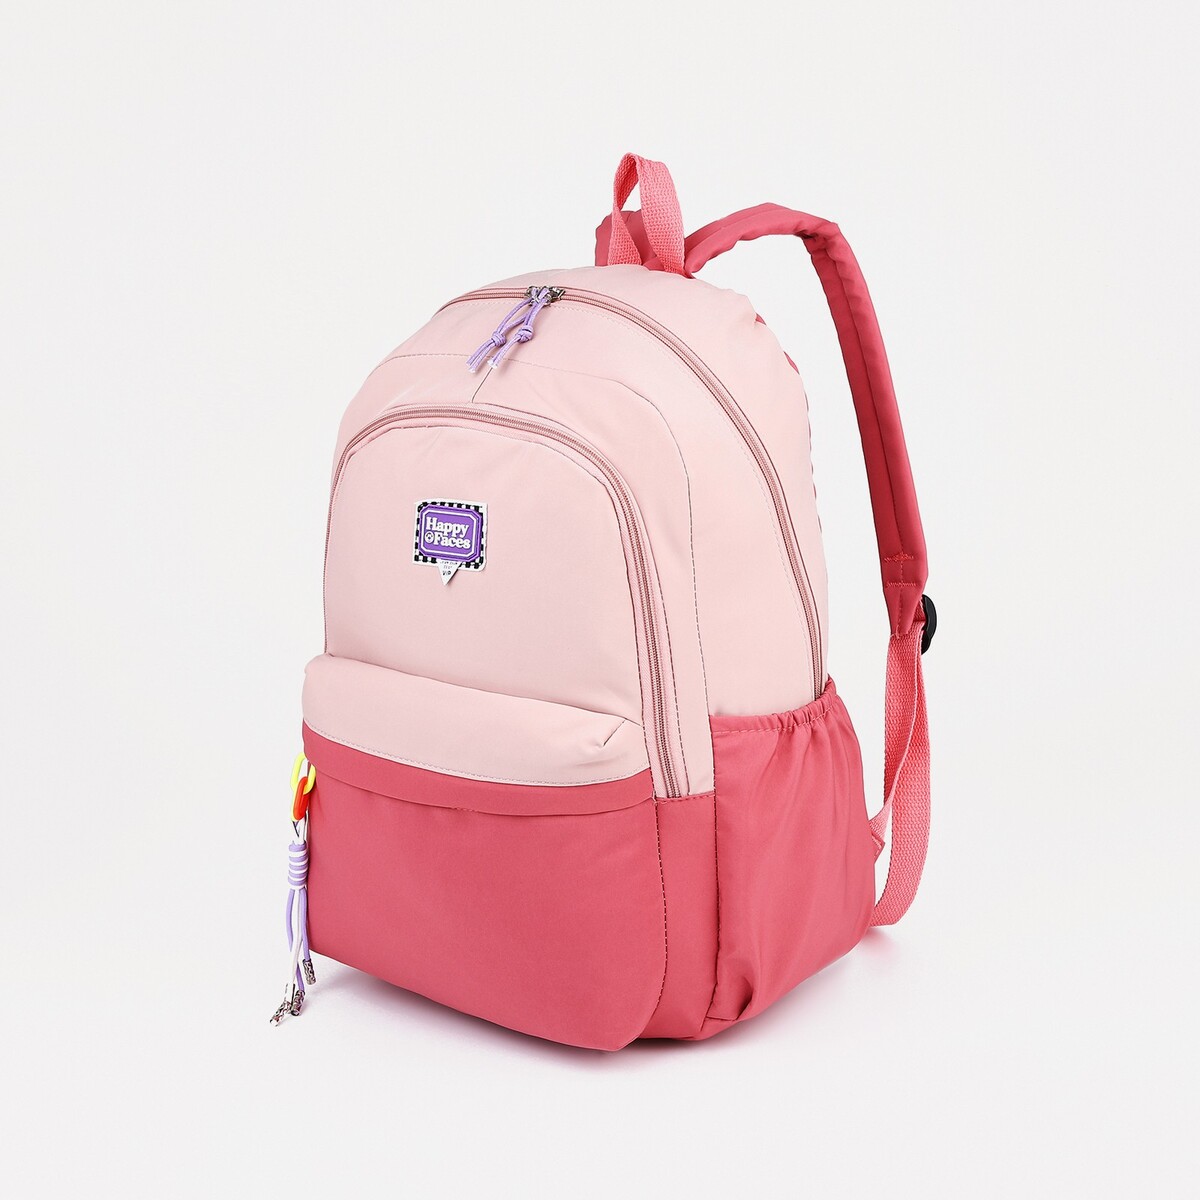 Рюкзак на молнии, 4 наружных кармана, цвет розовый рюкзак сумка на молнии 4 наружных кармана отделение для обуви розовый